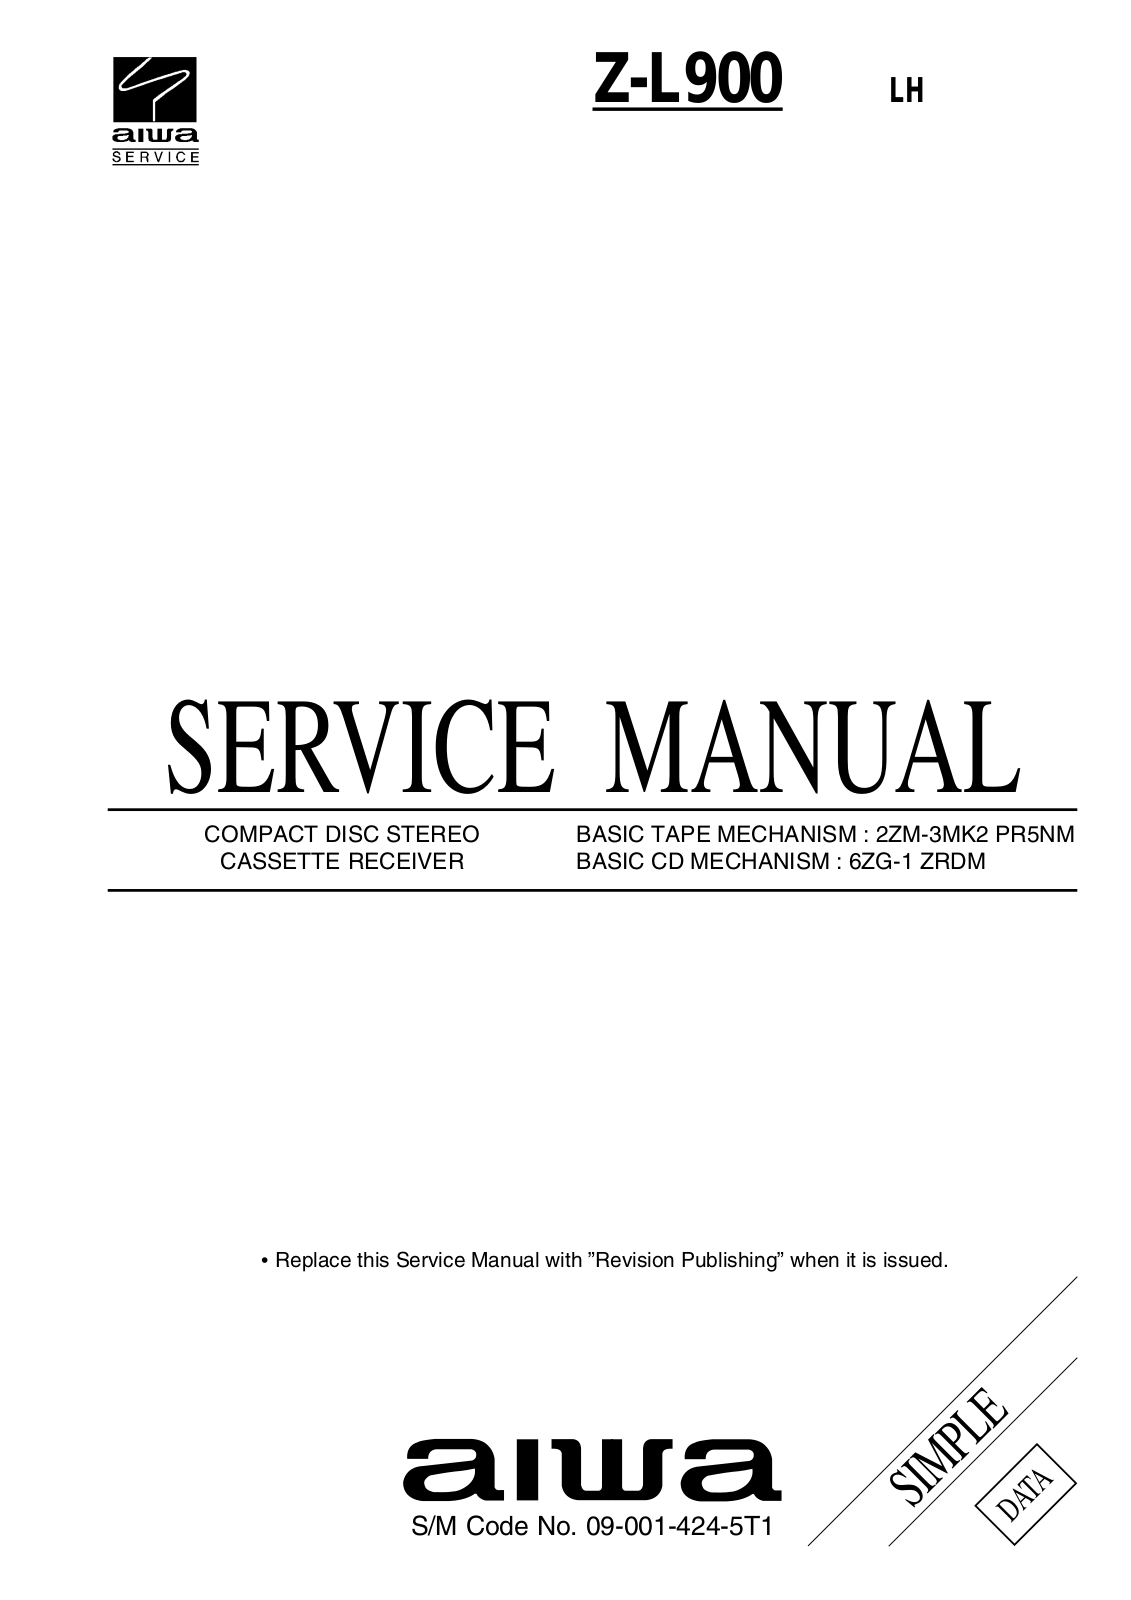 SONY 065145, 0686 01 Service Manual